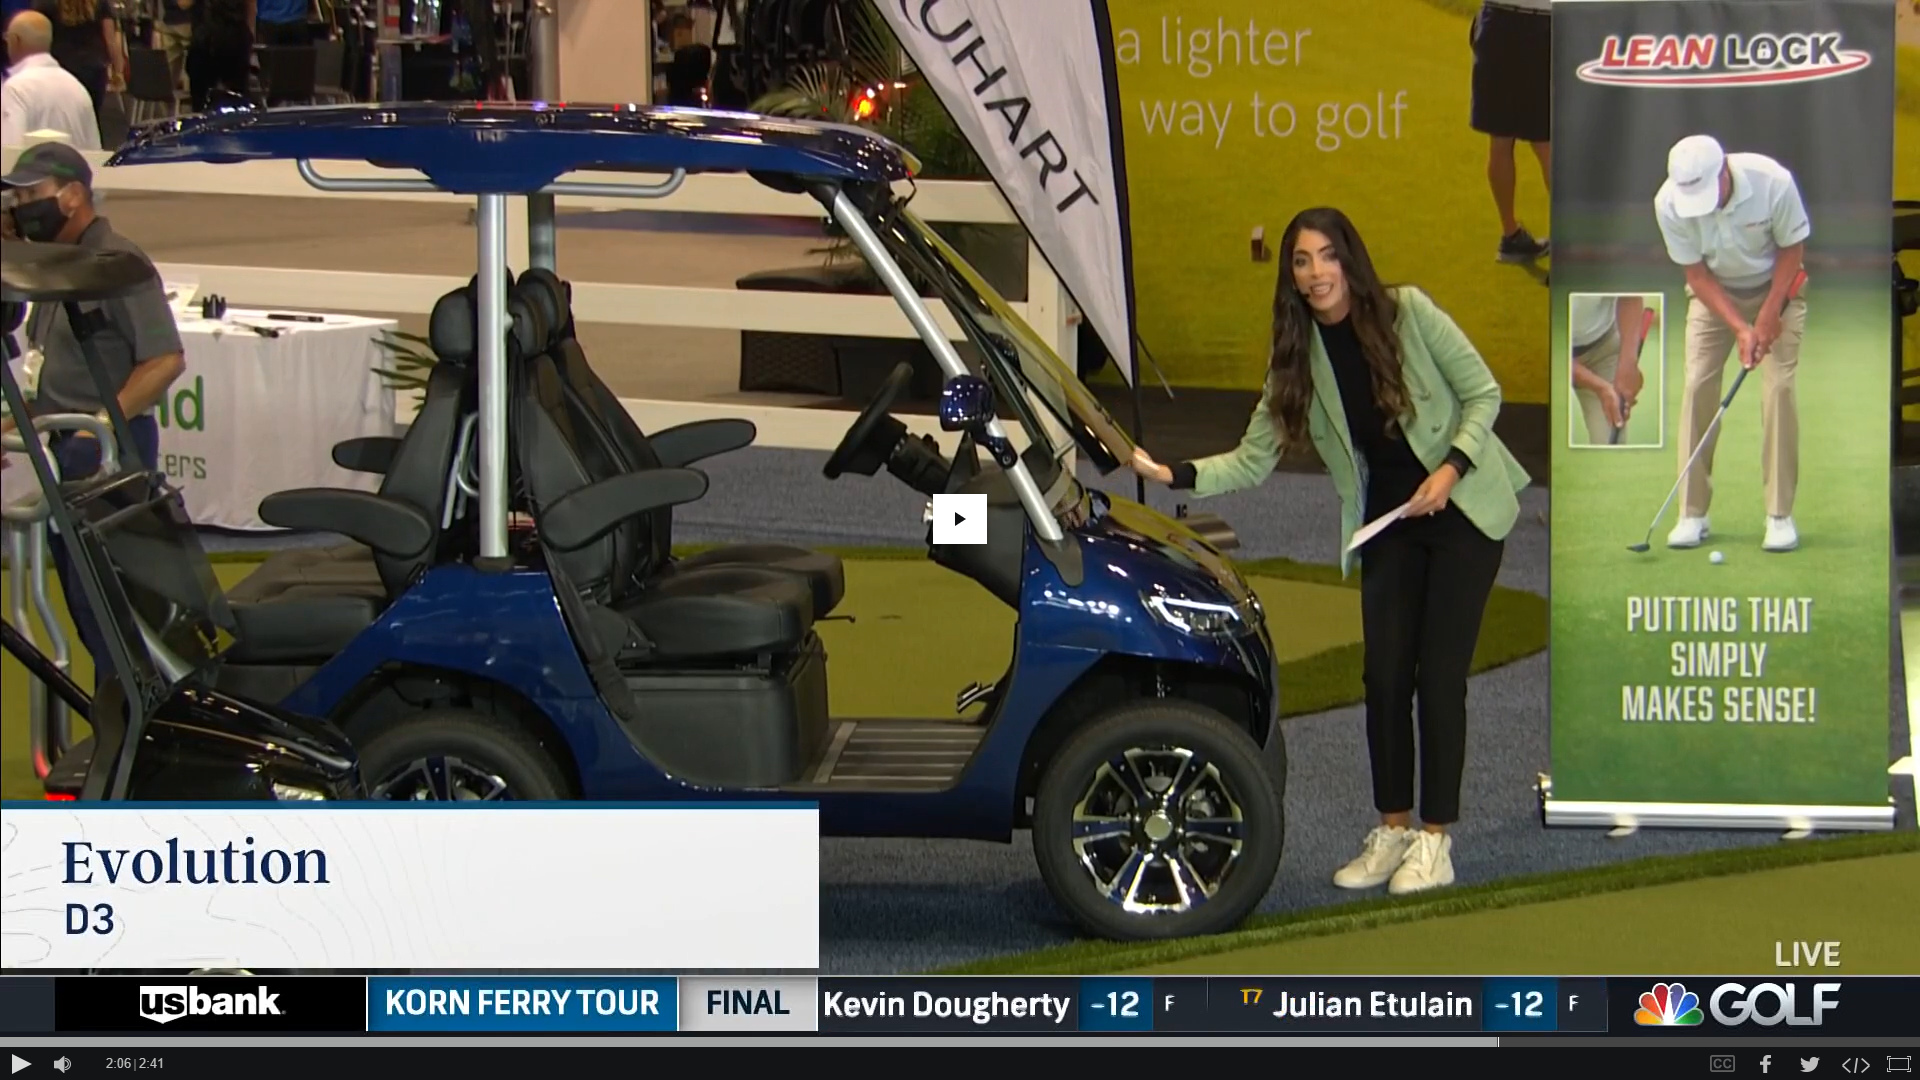 أخبار MSNBC: تقدم HDK (EVOLUTION) أحدث عربة جولف في معرض PGA